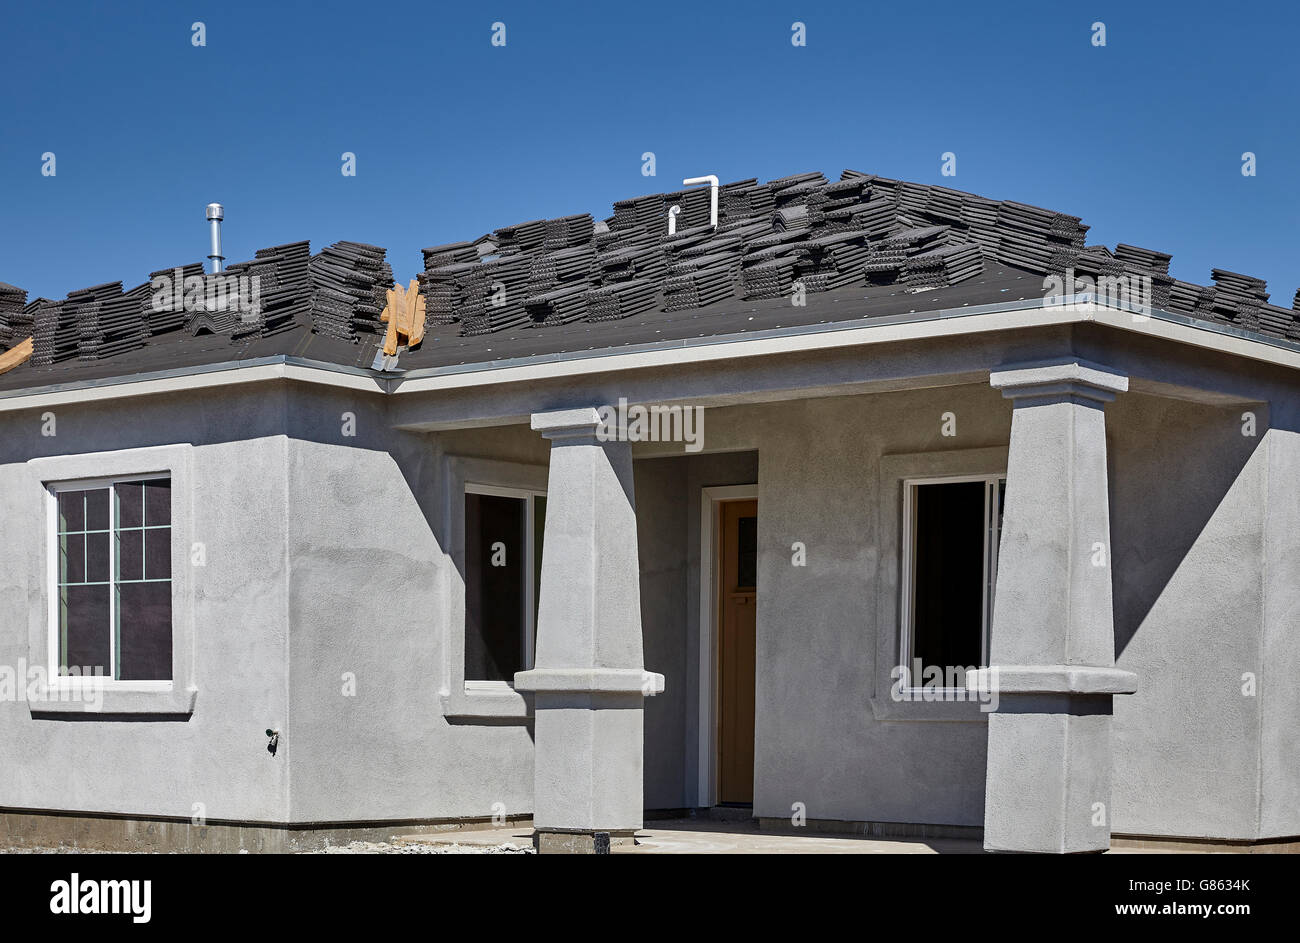 Nuova casa a padiglione in stucco e tegola per tetti per la vendita Foto Stock